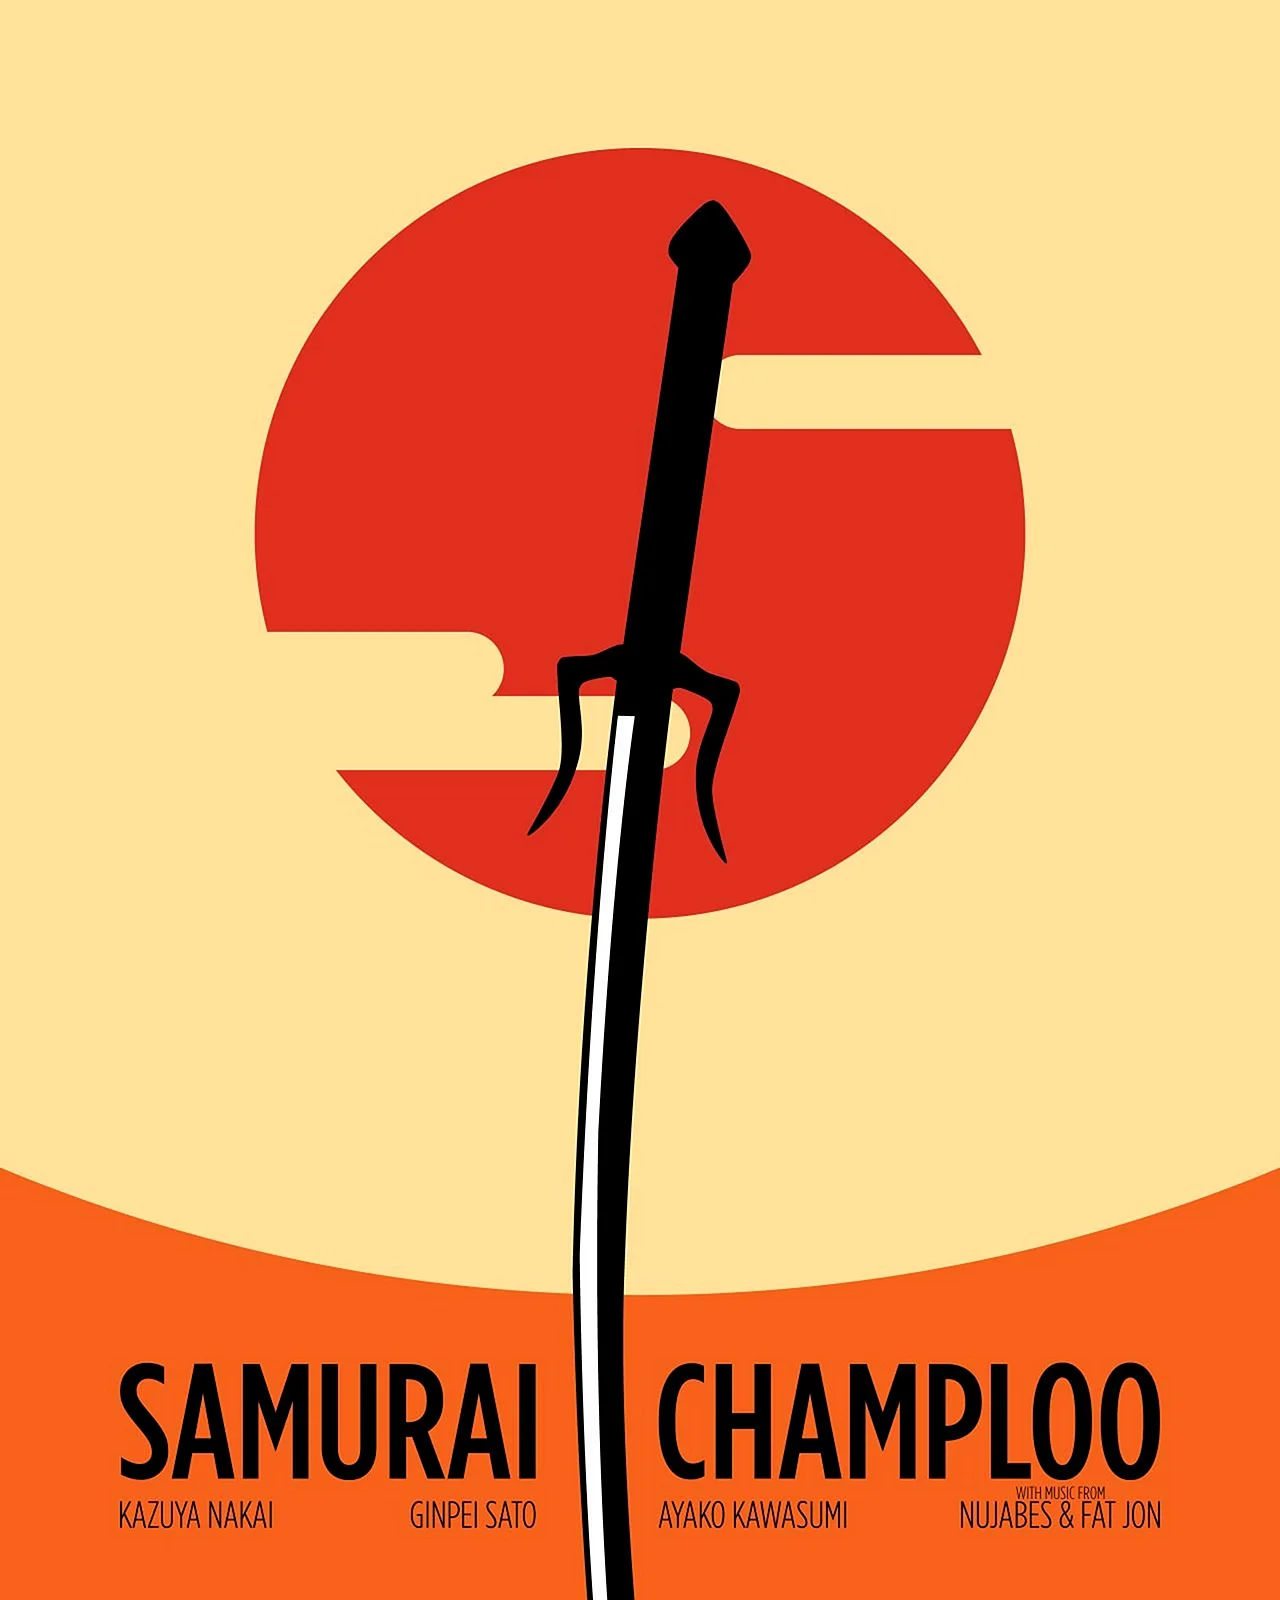 Samurai Minimal Art Wallpaper For iPhone